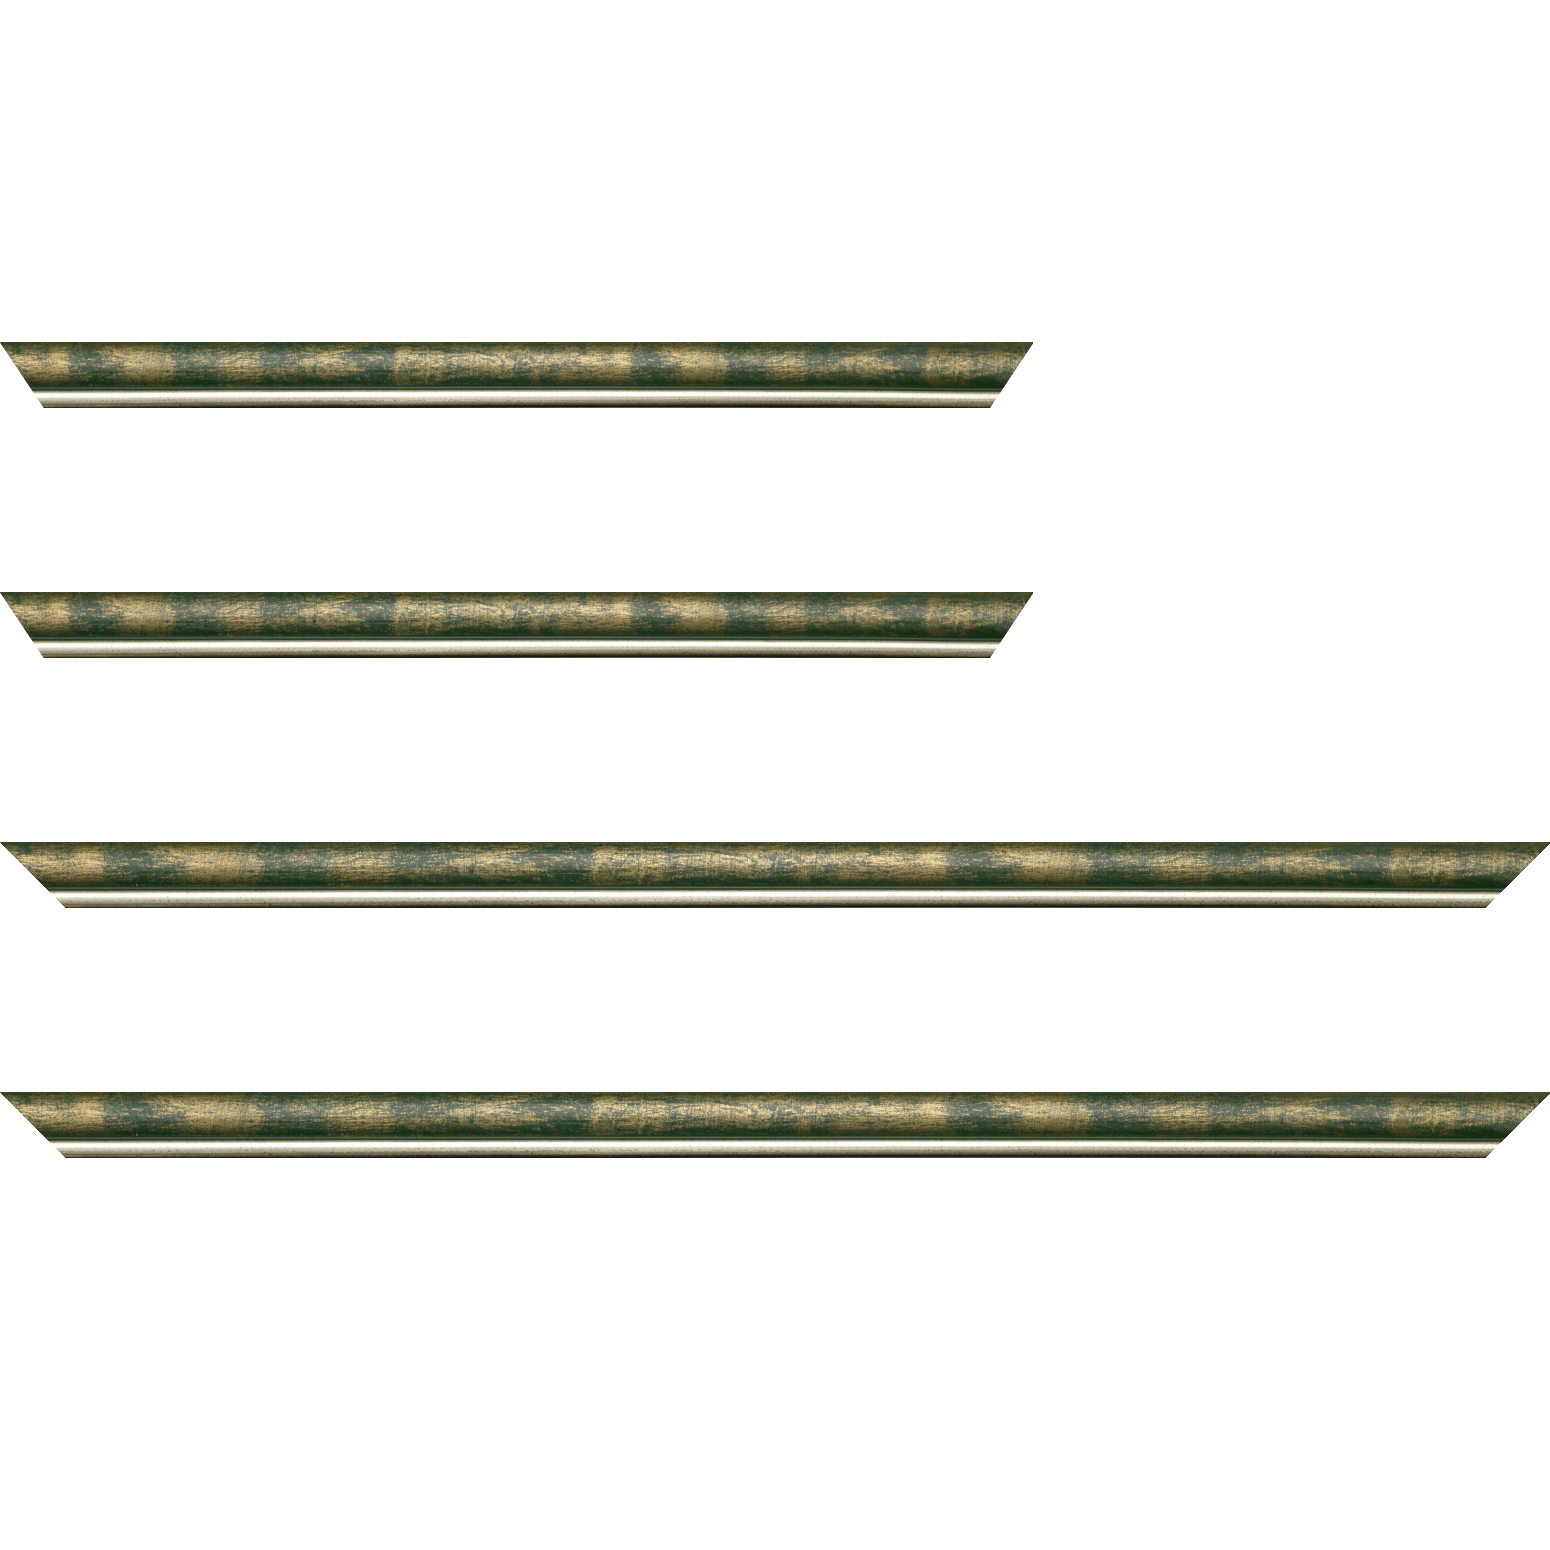 Baguette bois profil arrondi largeur 2.1cm  couleur vert fond or filet argent chaud - 24x30